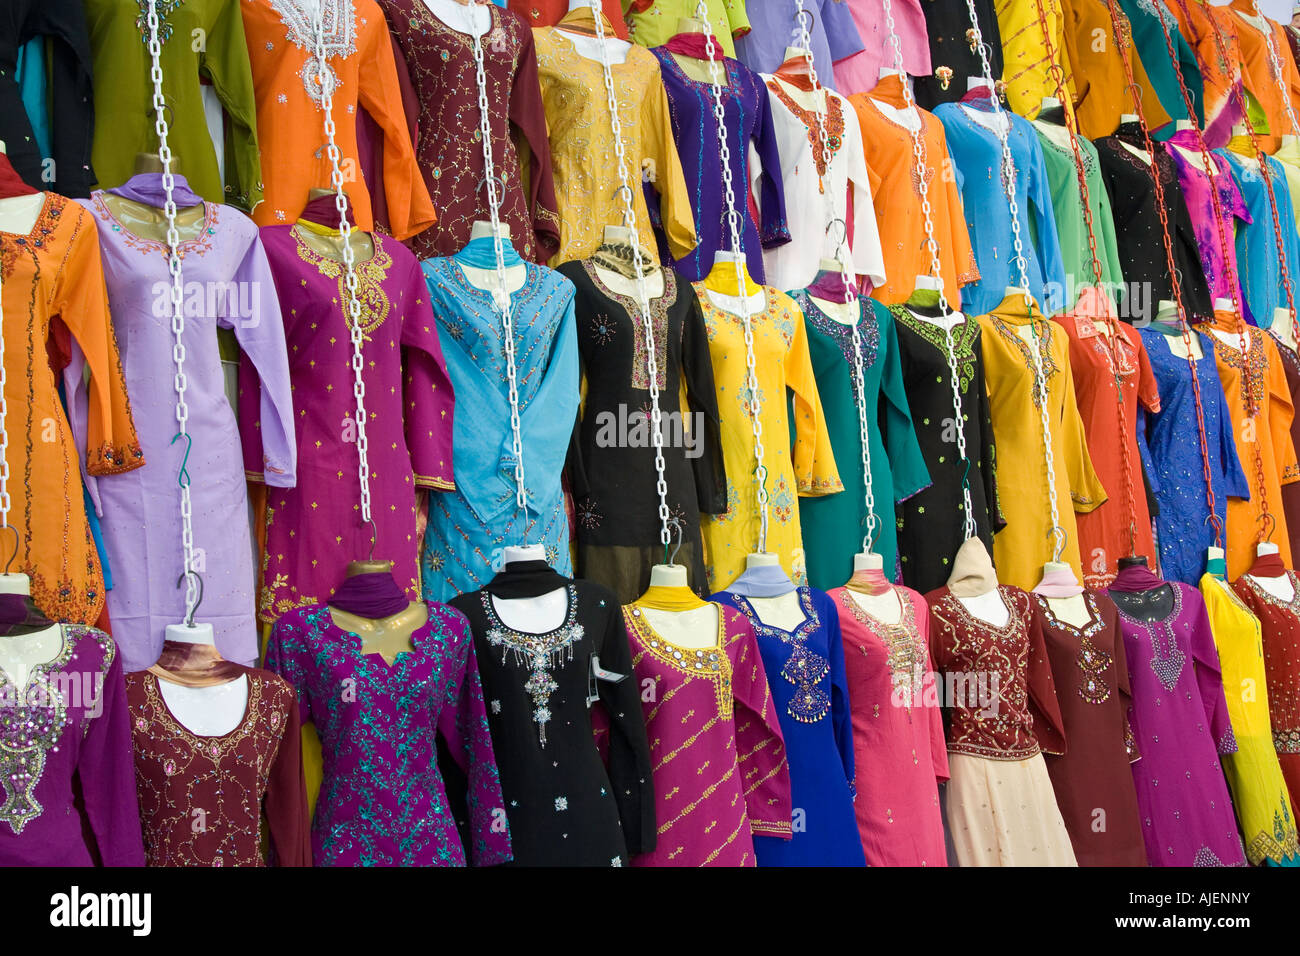 Tienda de ropa india fotografías imágenes de resolución - Alamy